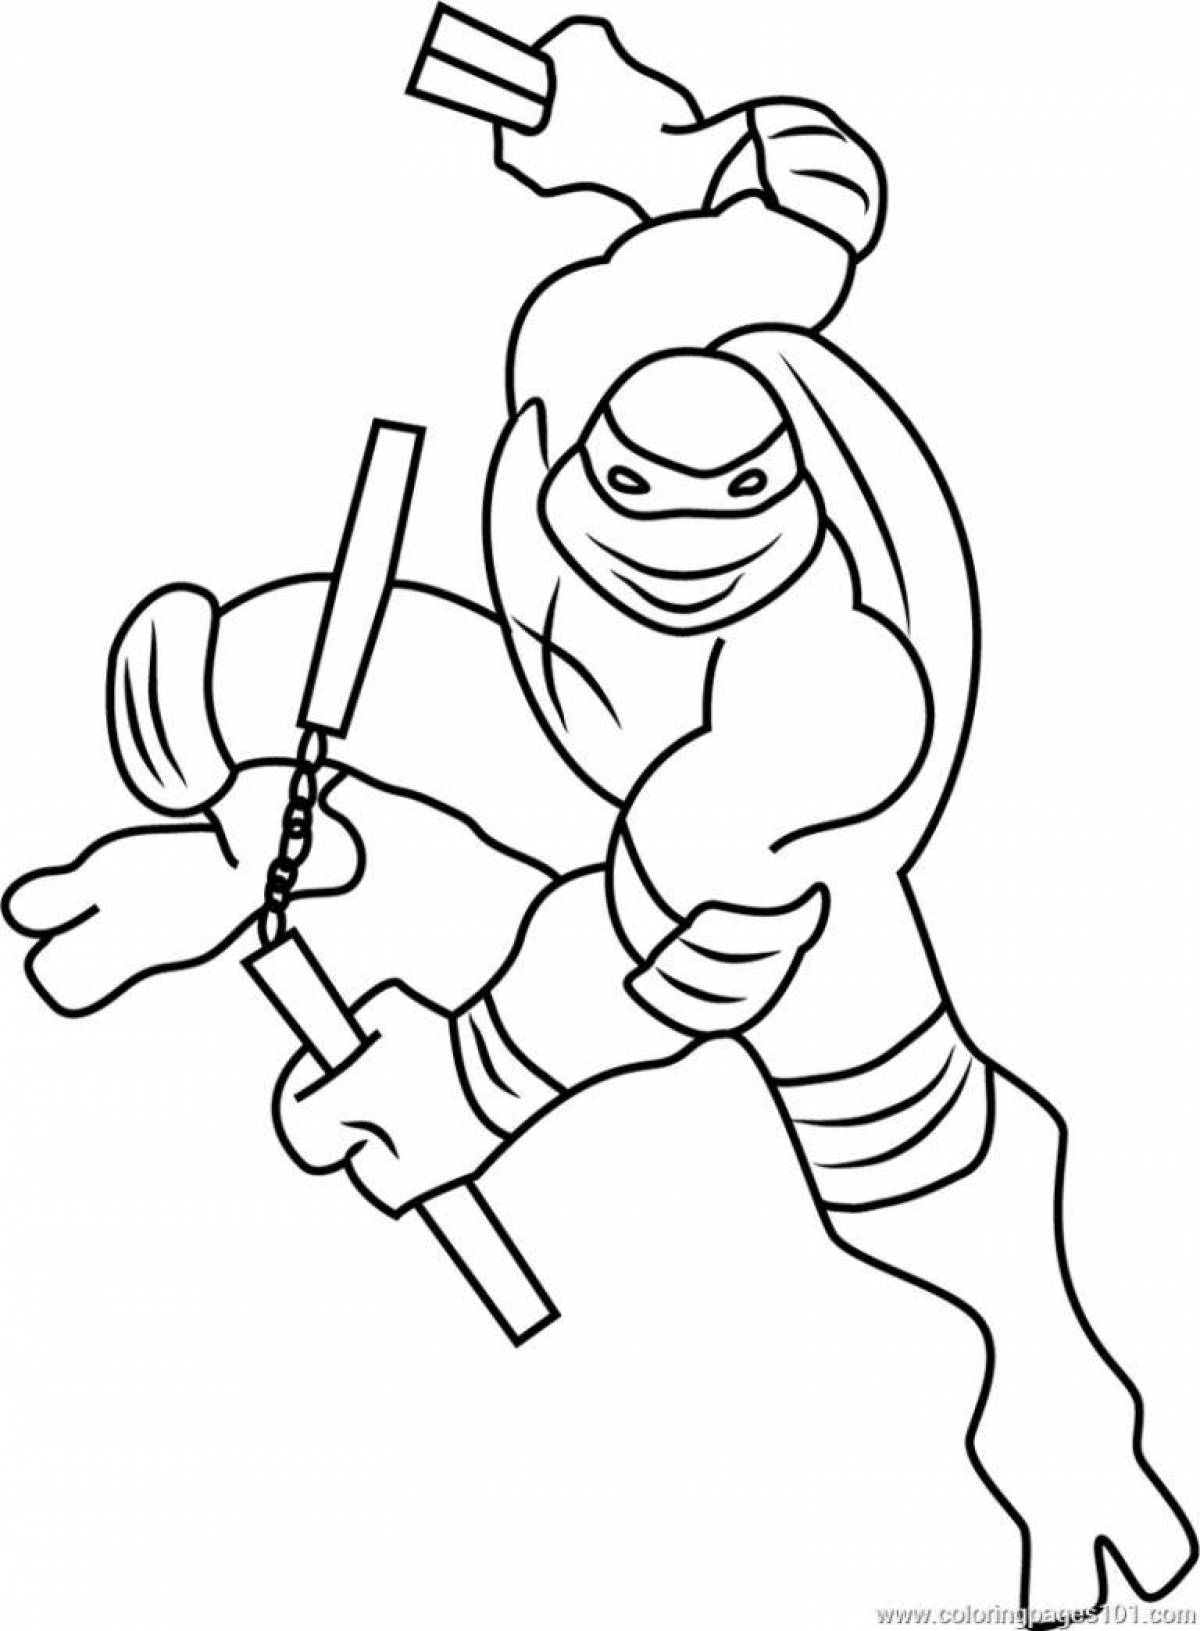 Michelangelo's Dynamic Teenage Mutant Ninja Turtles coloring book